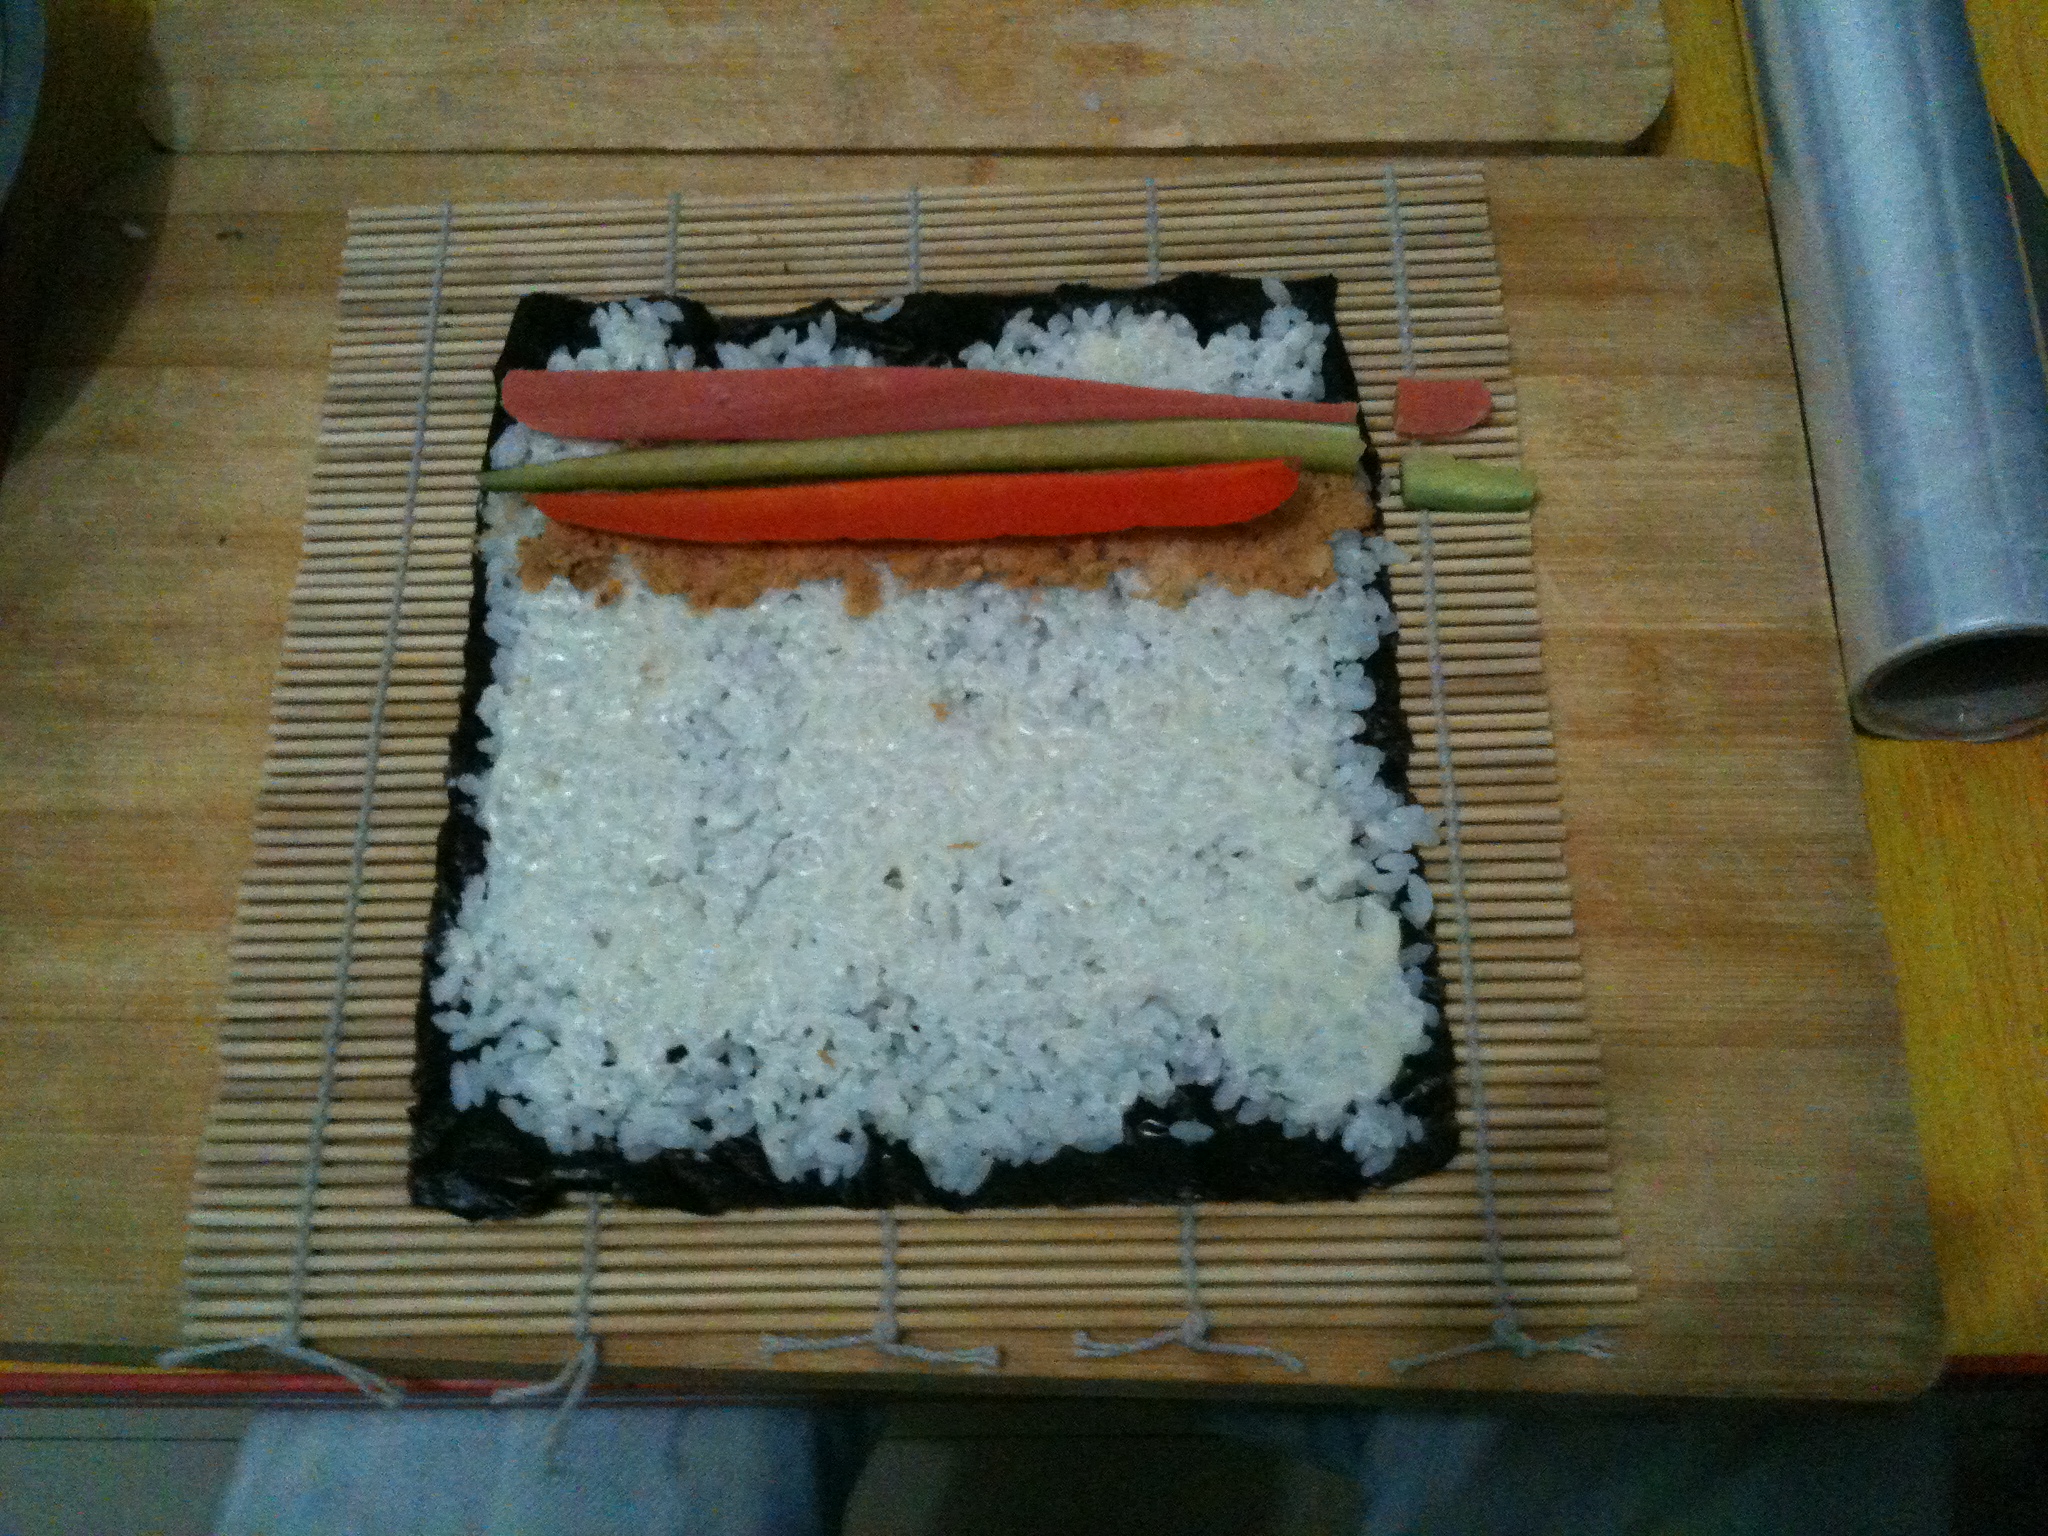 寿司--纯手工制作过程|吃货来了 - 义乌十八腔论坛